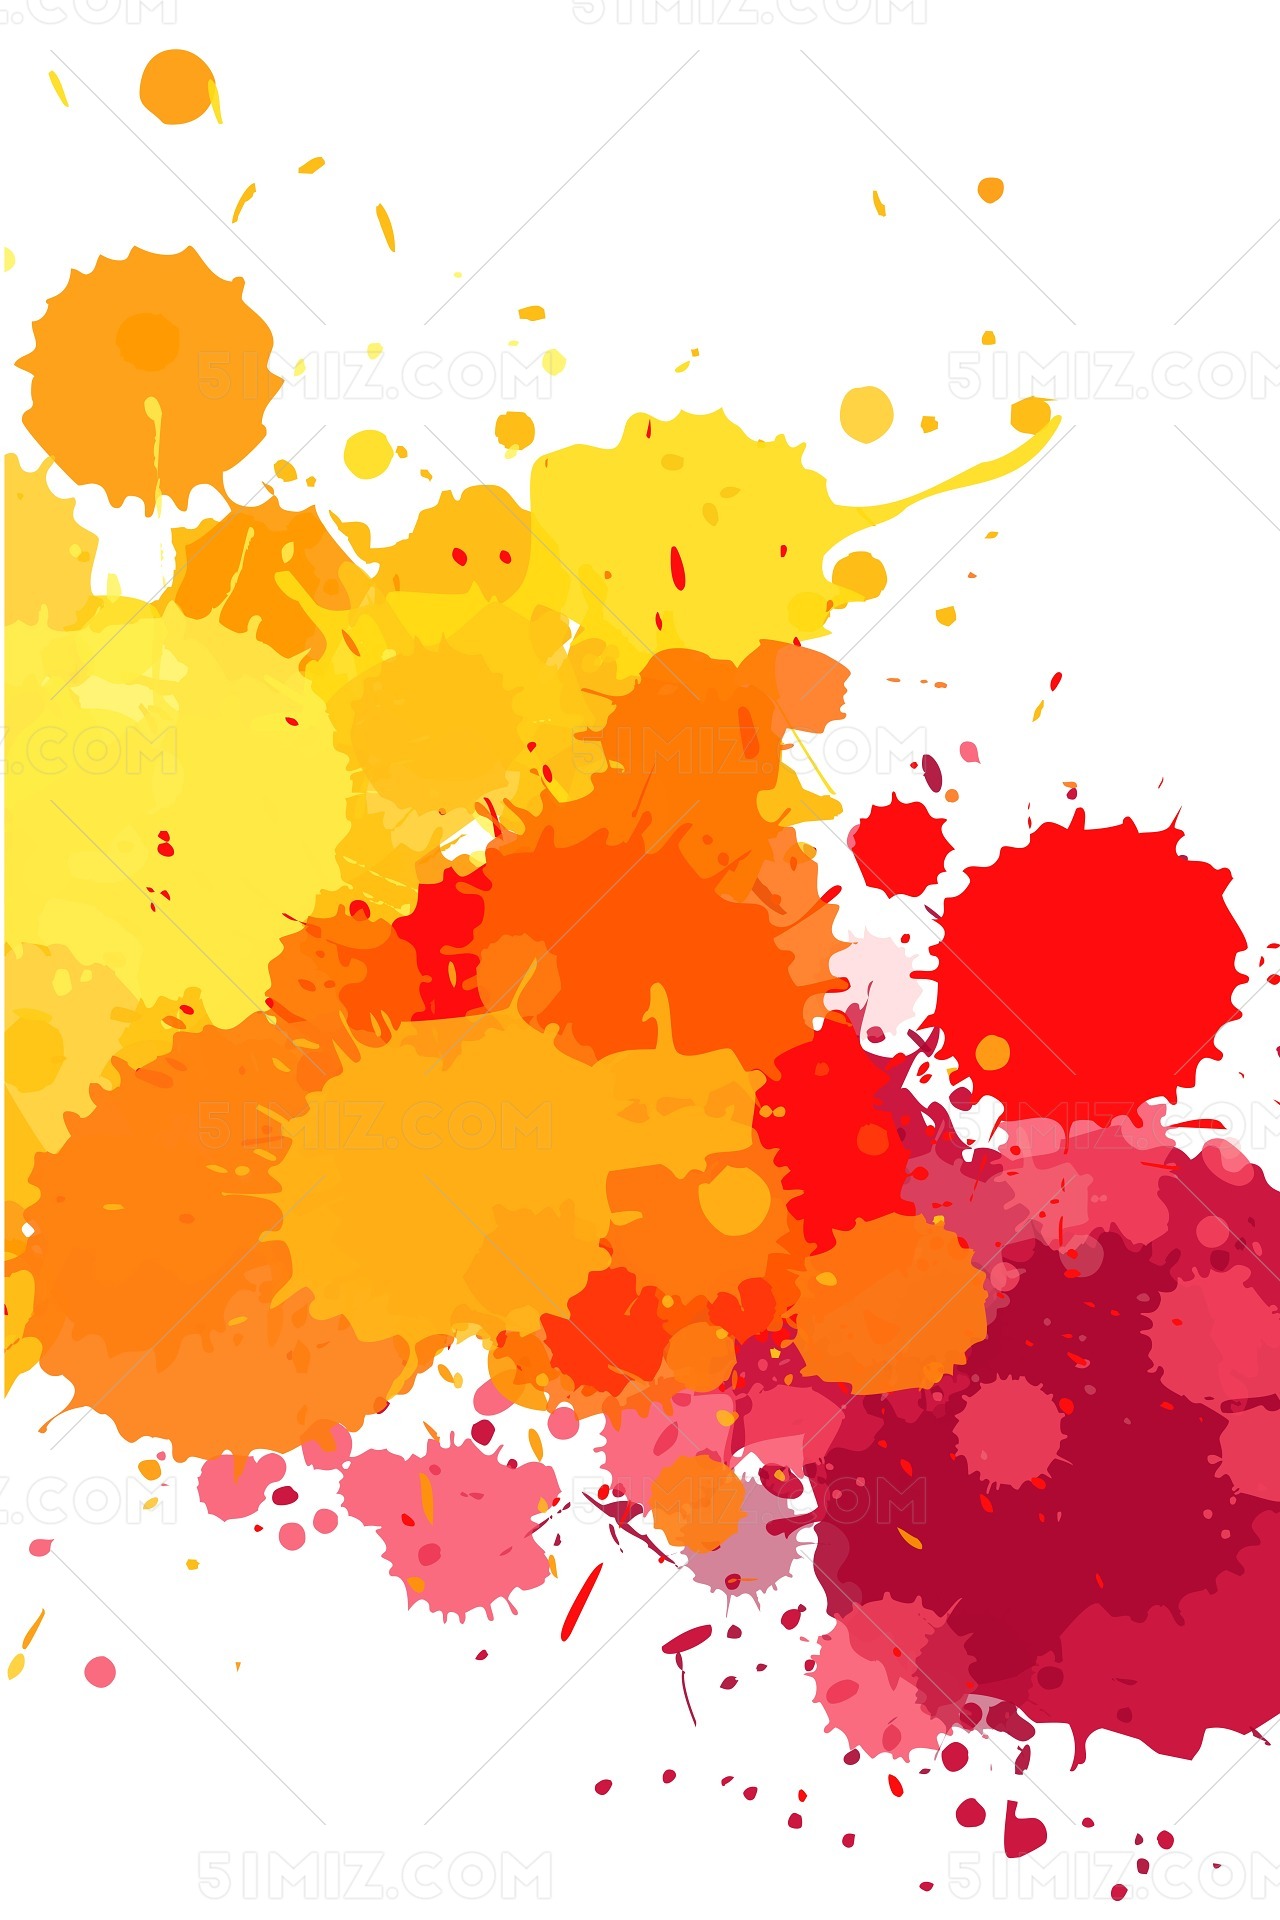 彩色水彩彩墨喷溅粉末素材免费下载 - 觅知网